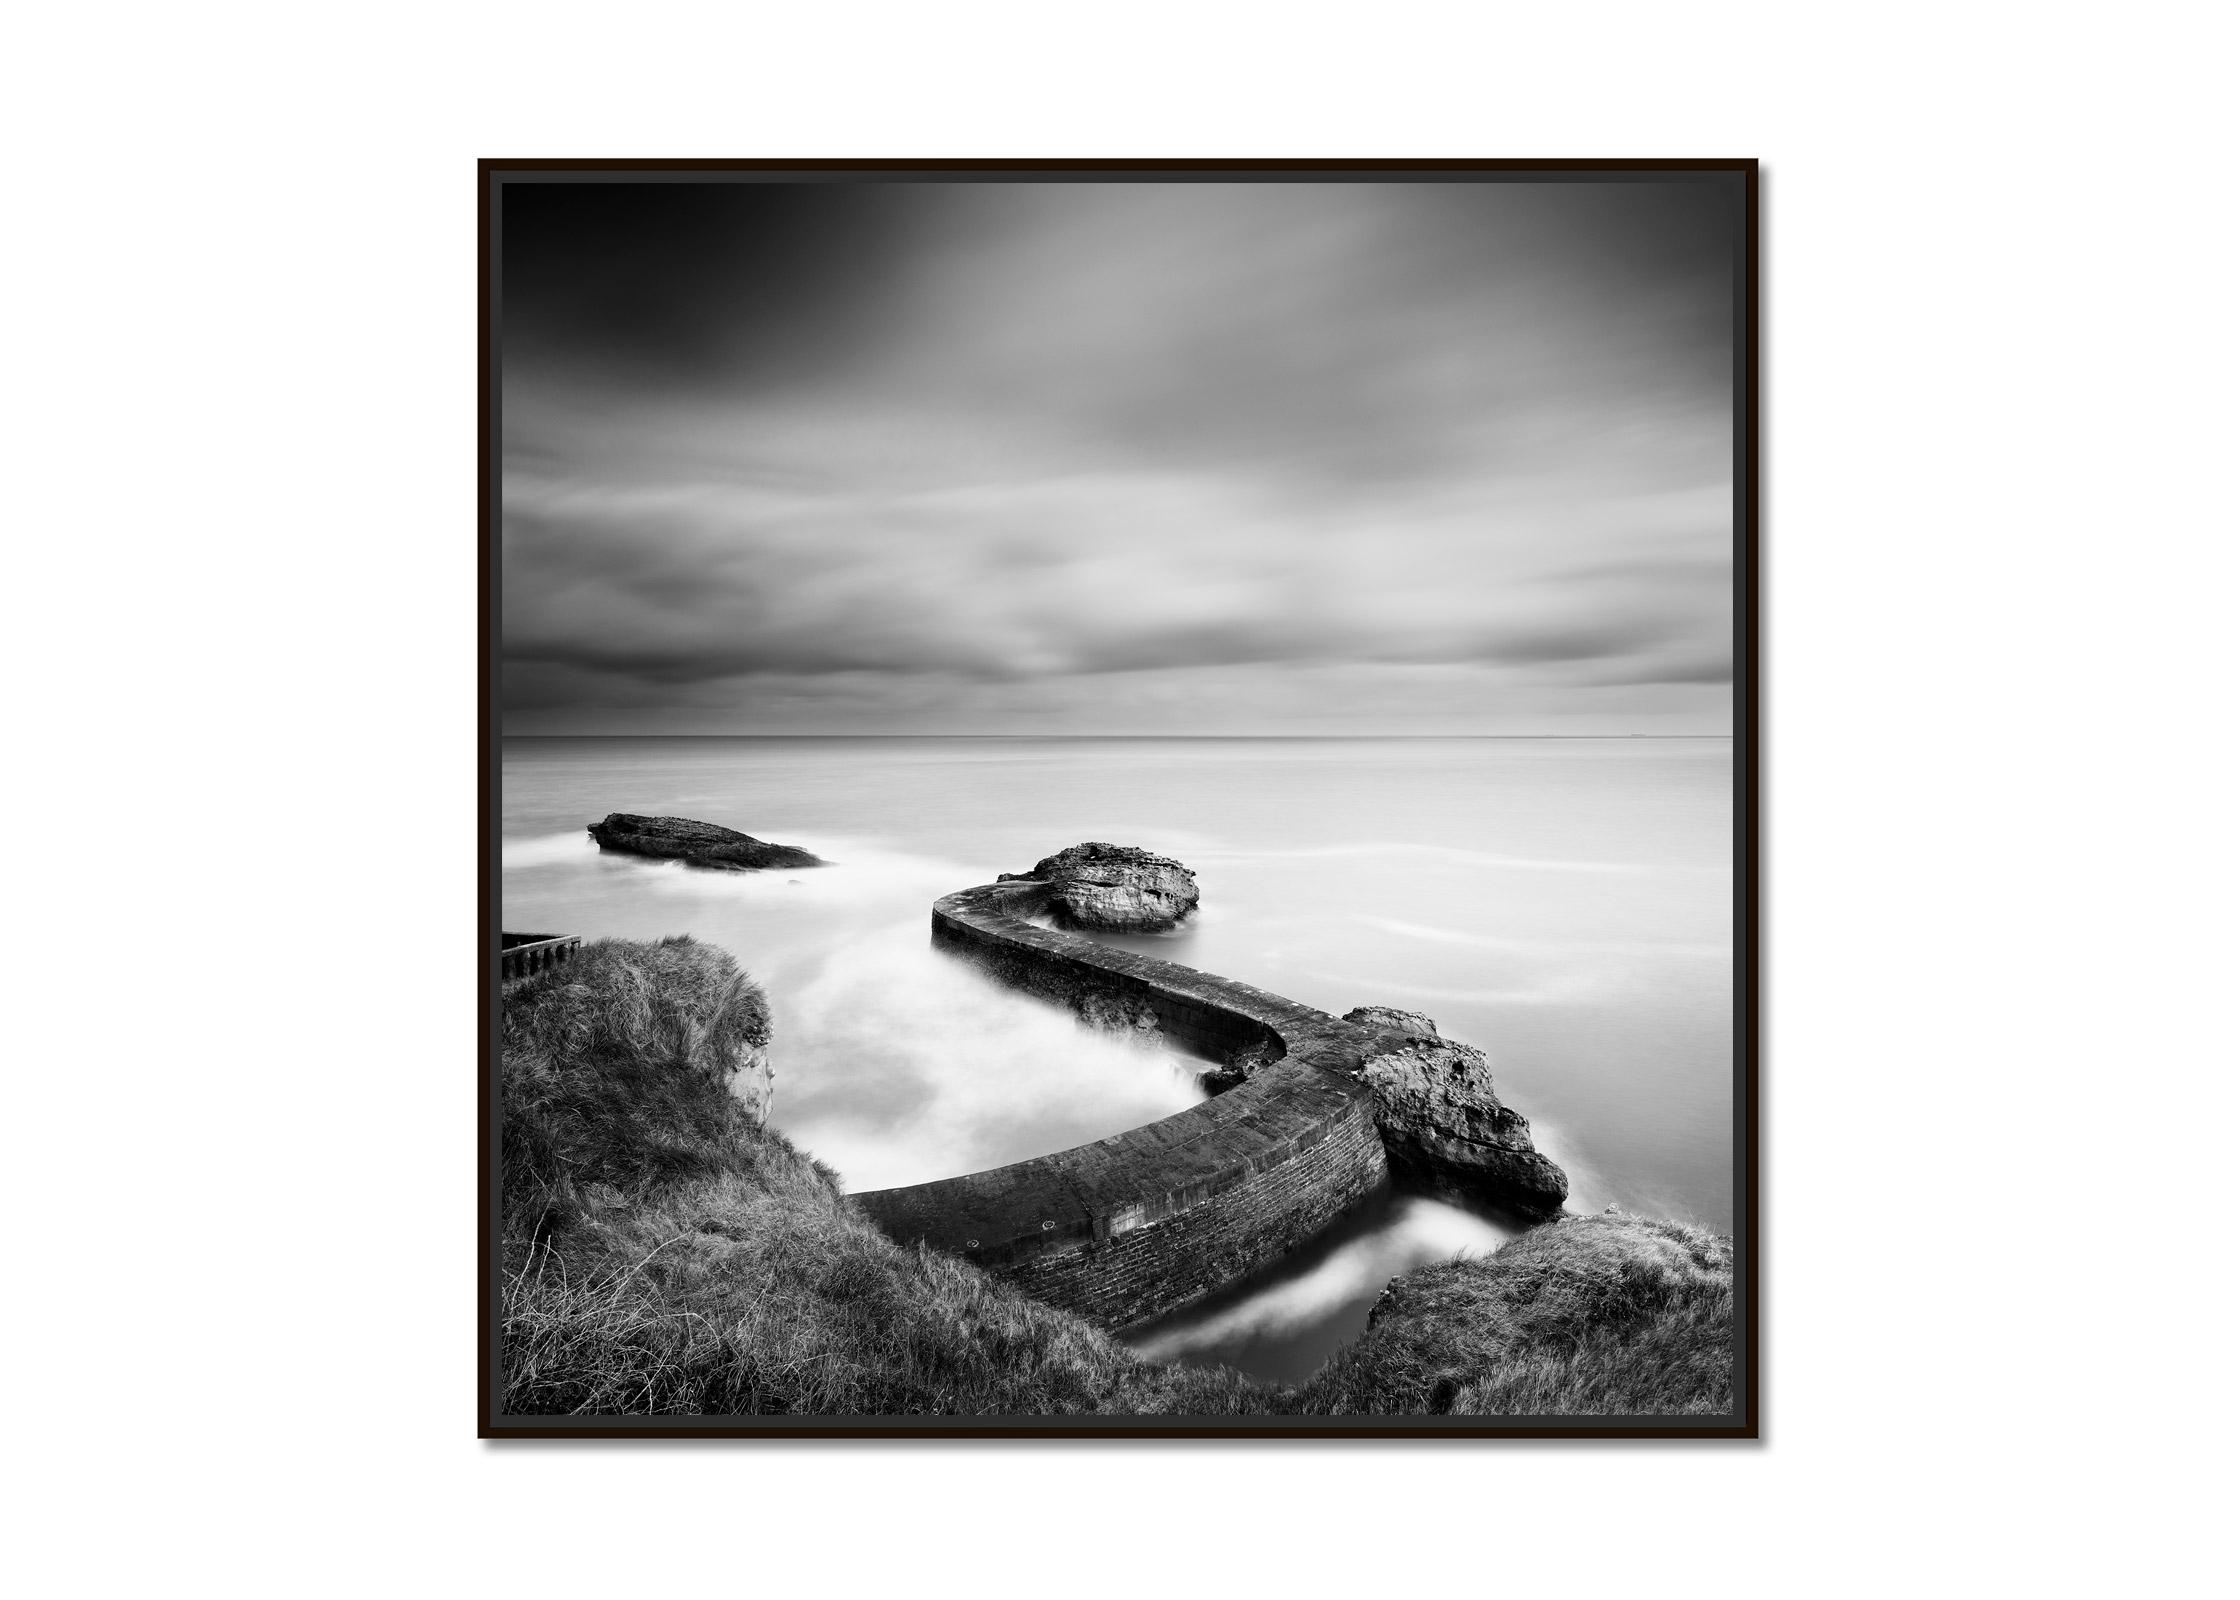 Jetée du brise-lames, côte atlantique, France, photographie de paysage aquatique en noir et blanc  - Photograph de Gerald Berghammer